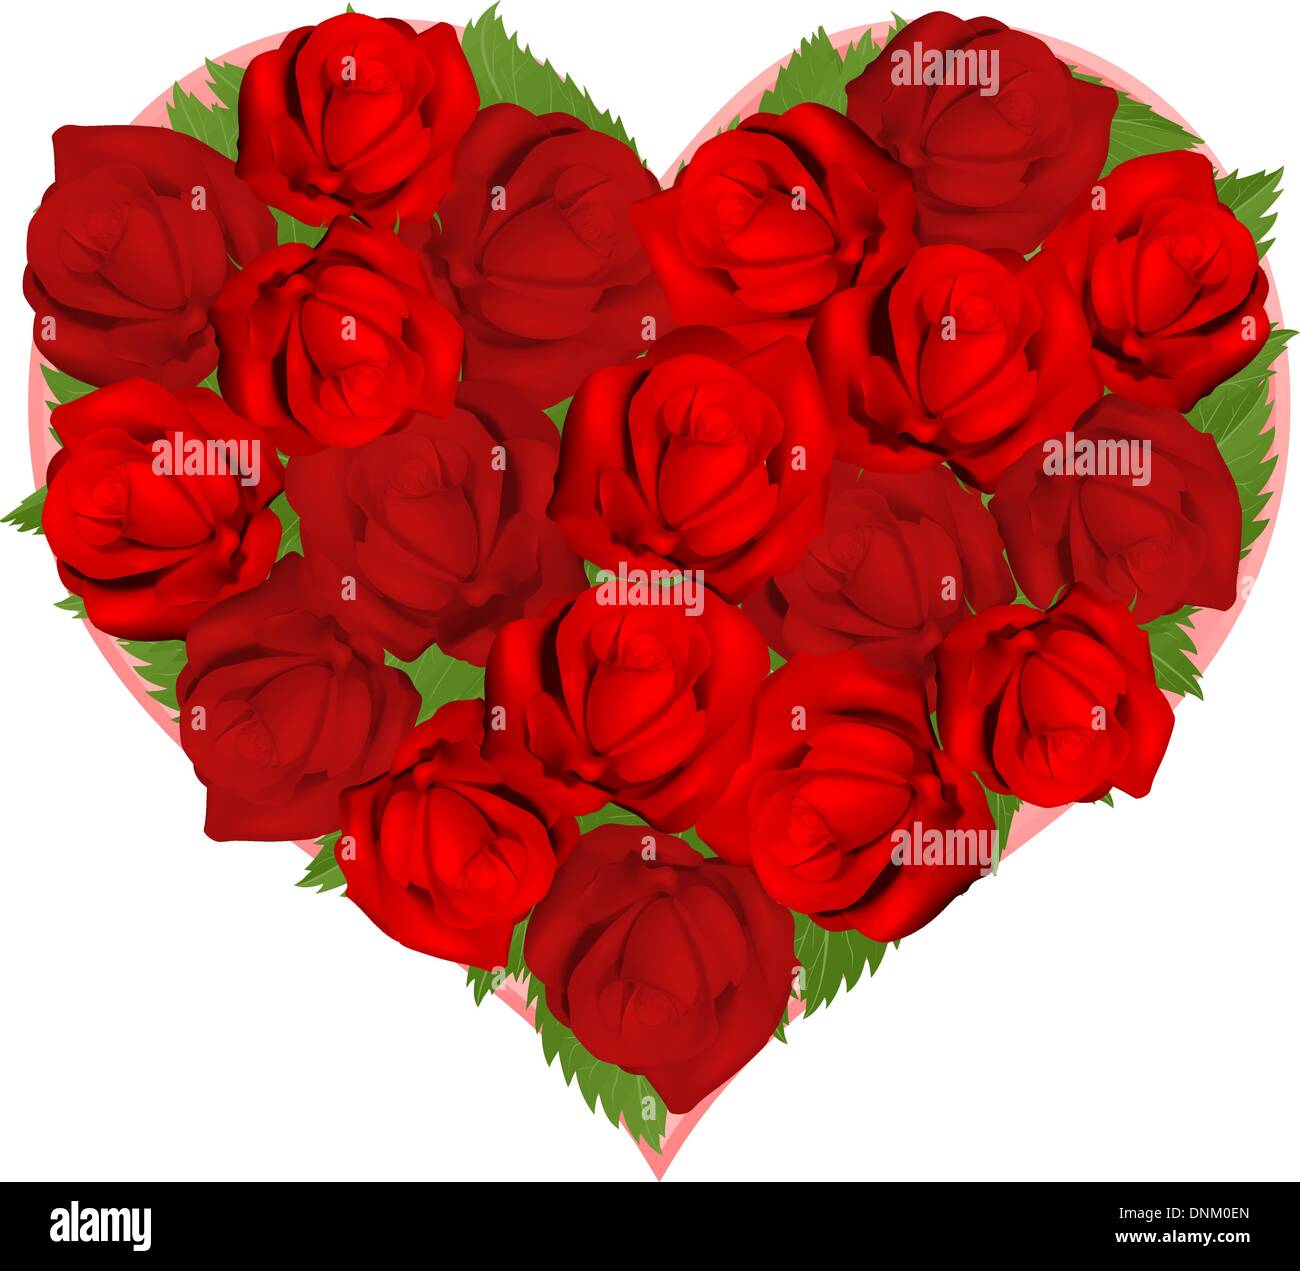 Illustrationen von schönen roten Rosen in Herzform Anordnung Stock Vektor